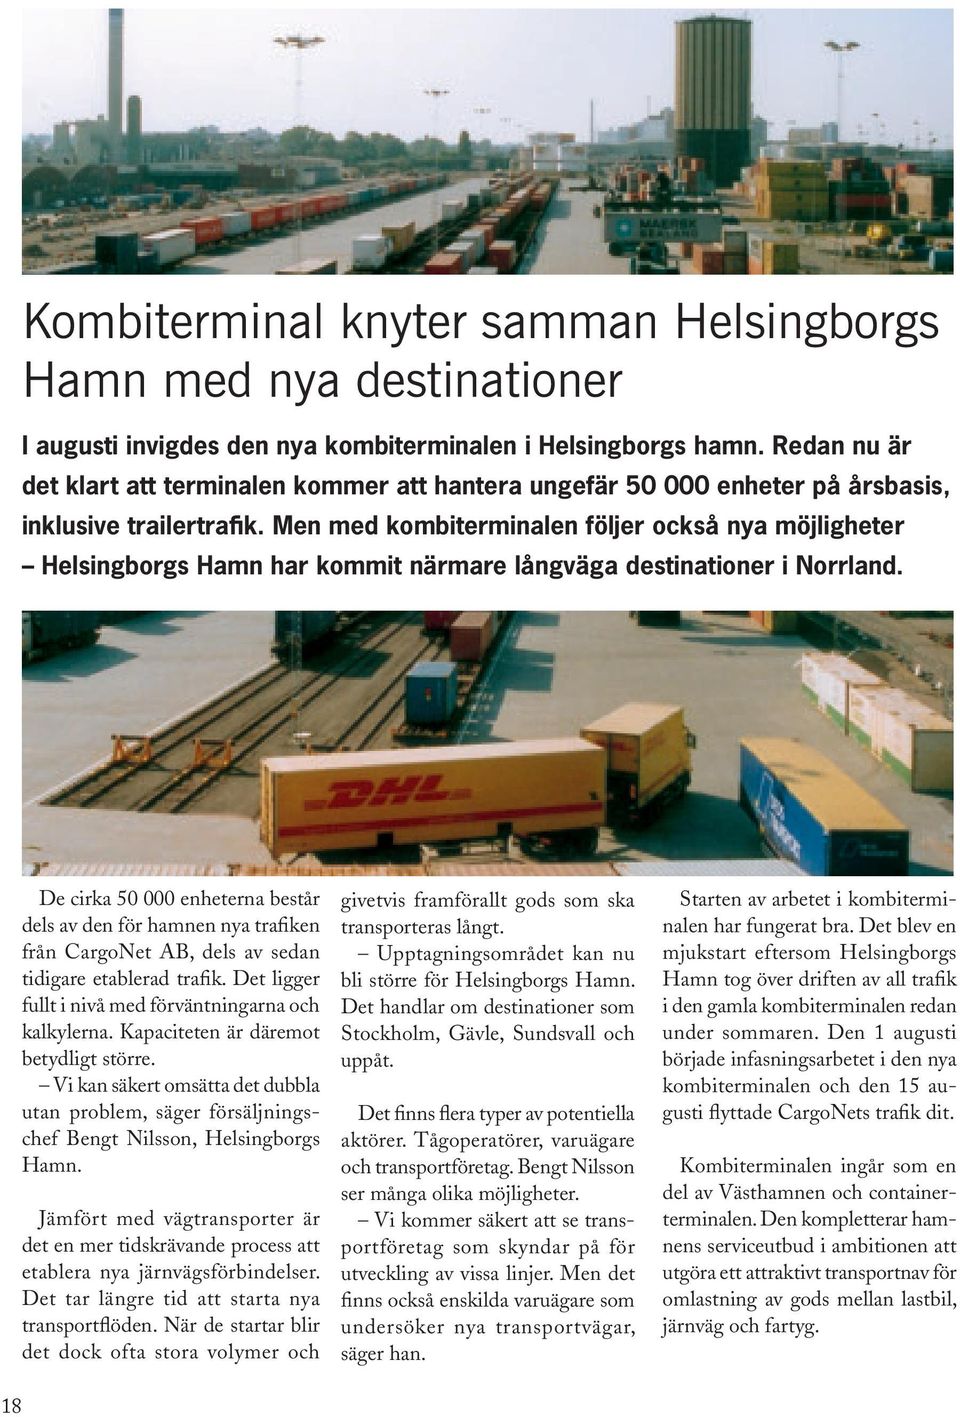 Men med kombiterminalen följer också nya möjligheter Helsingborgs Hamn har kommit närmare långväga destinationer i Norrland.